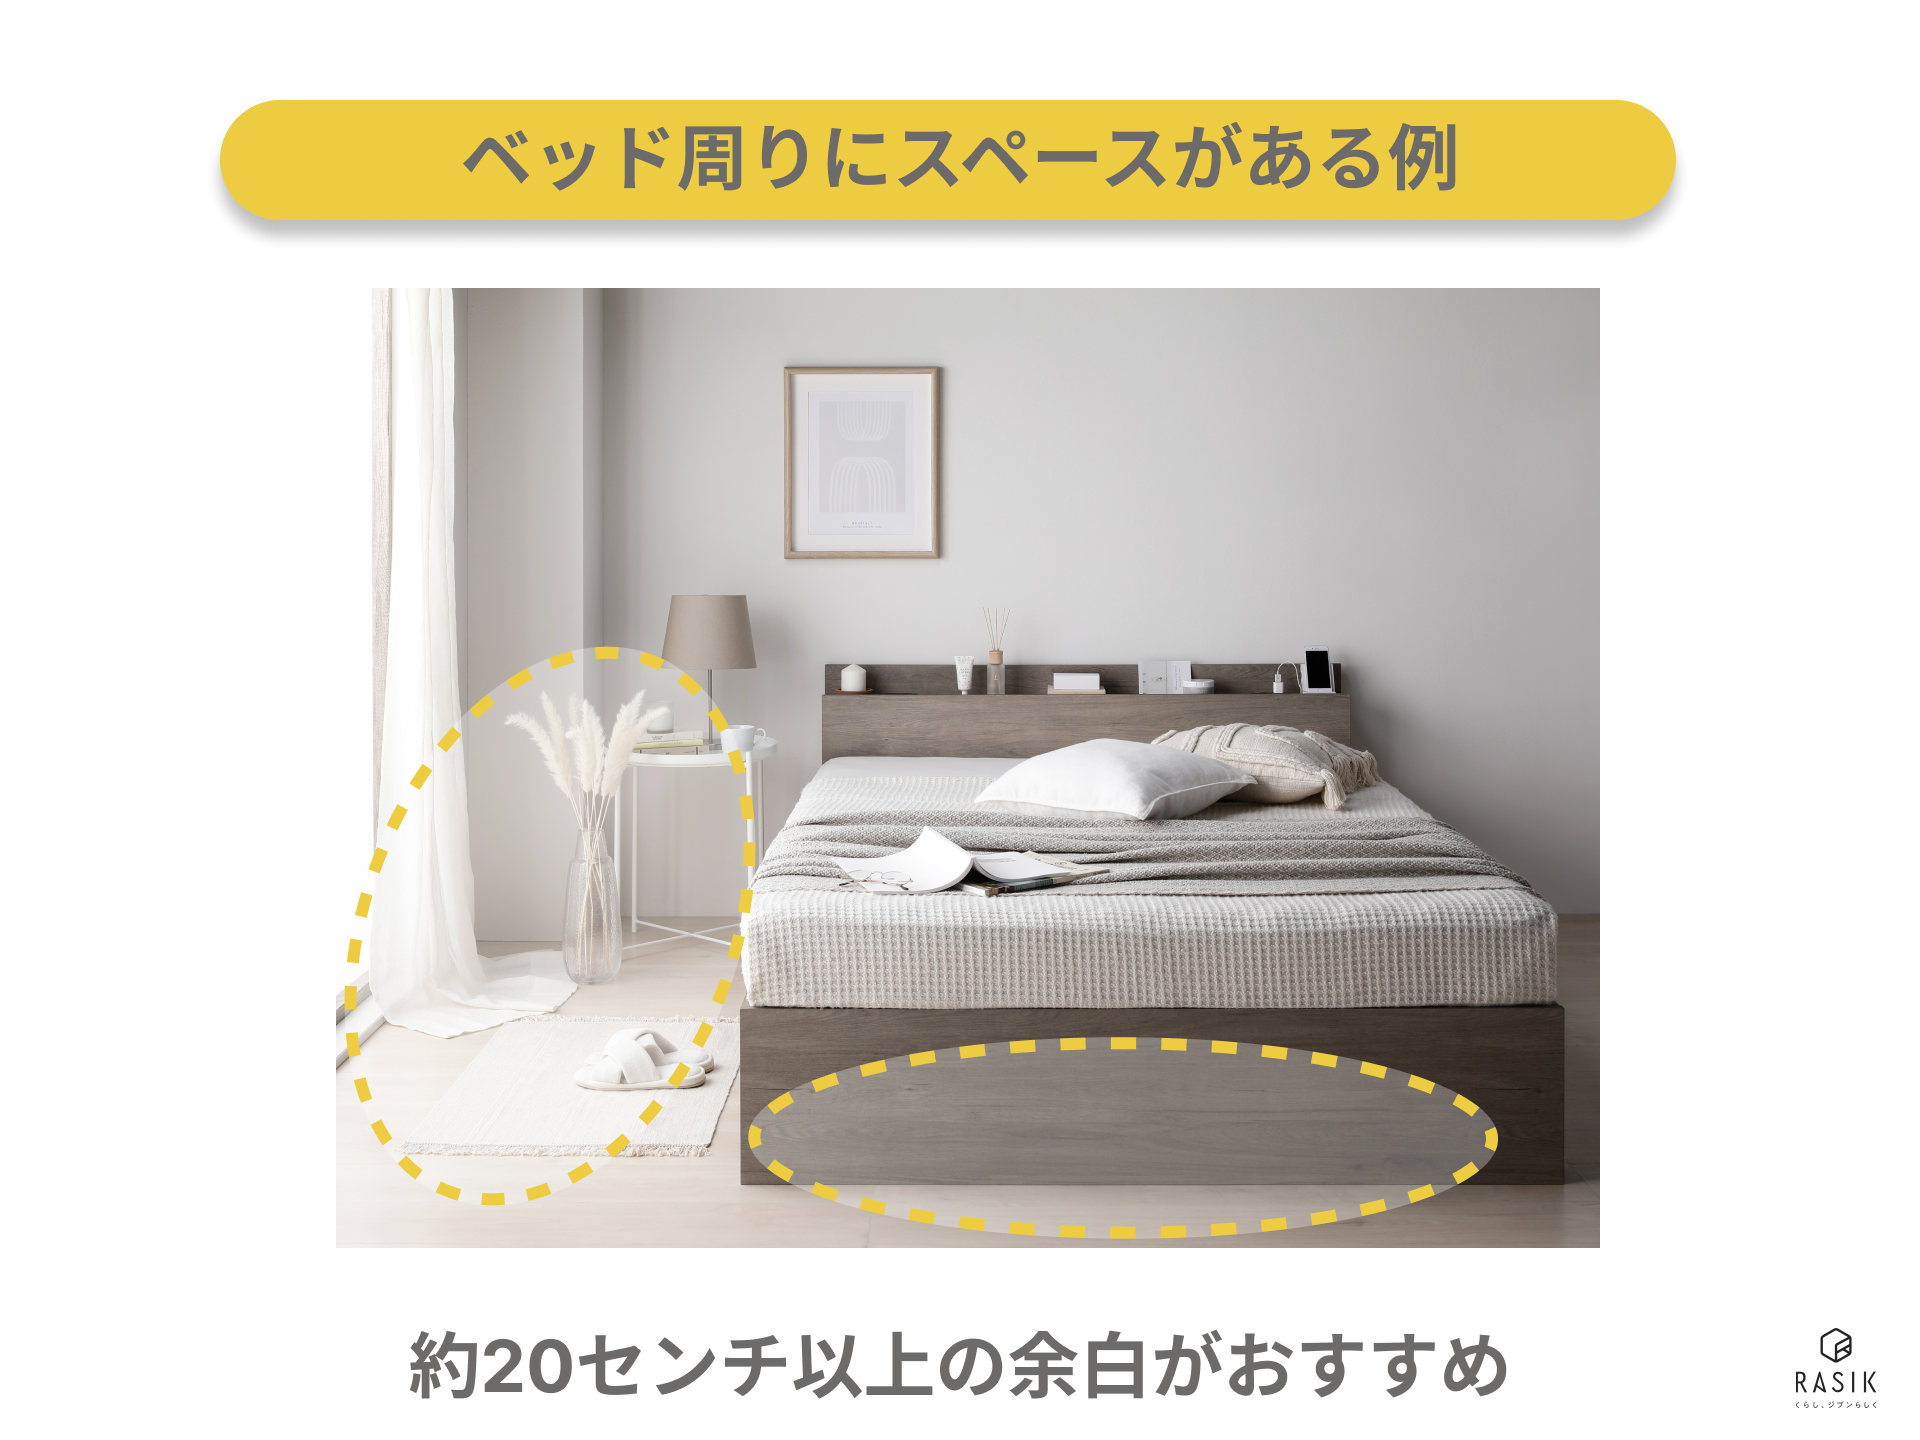 ベッド周りにスペースがある例